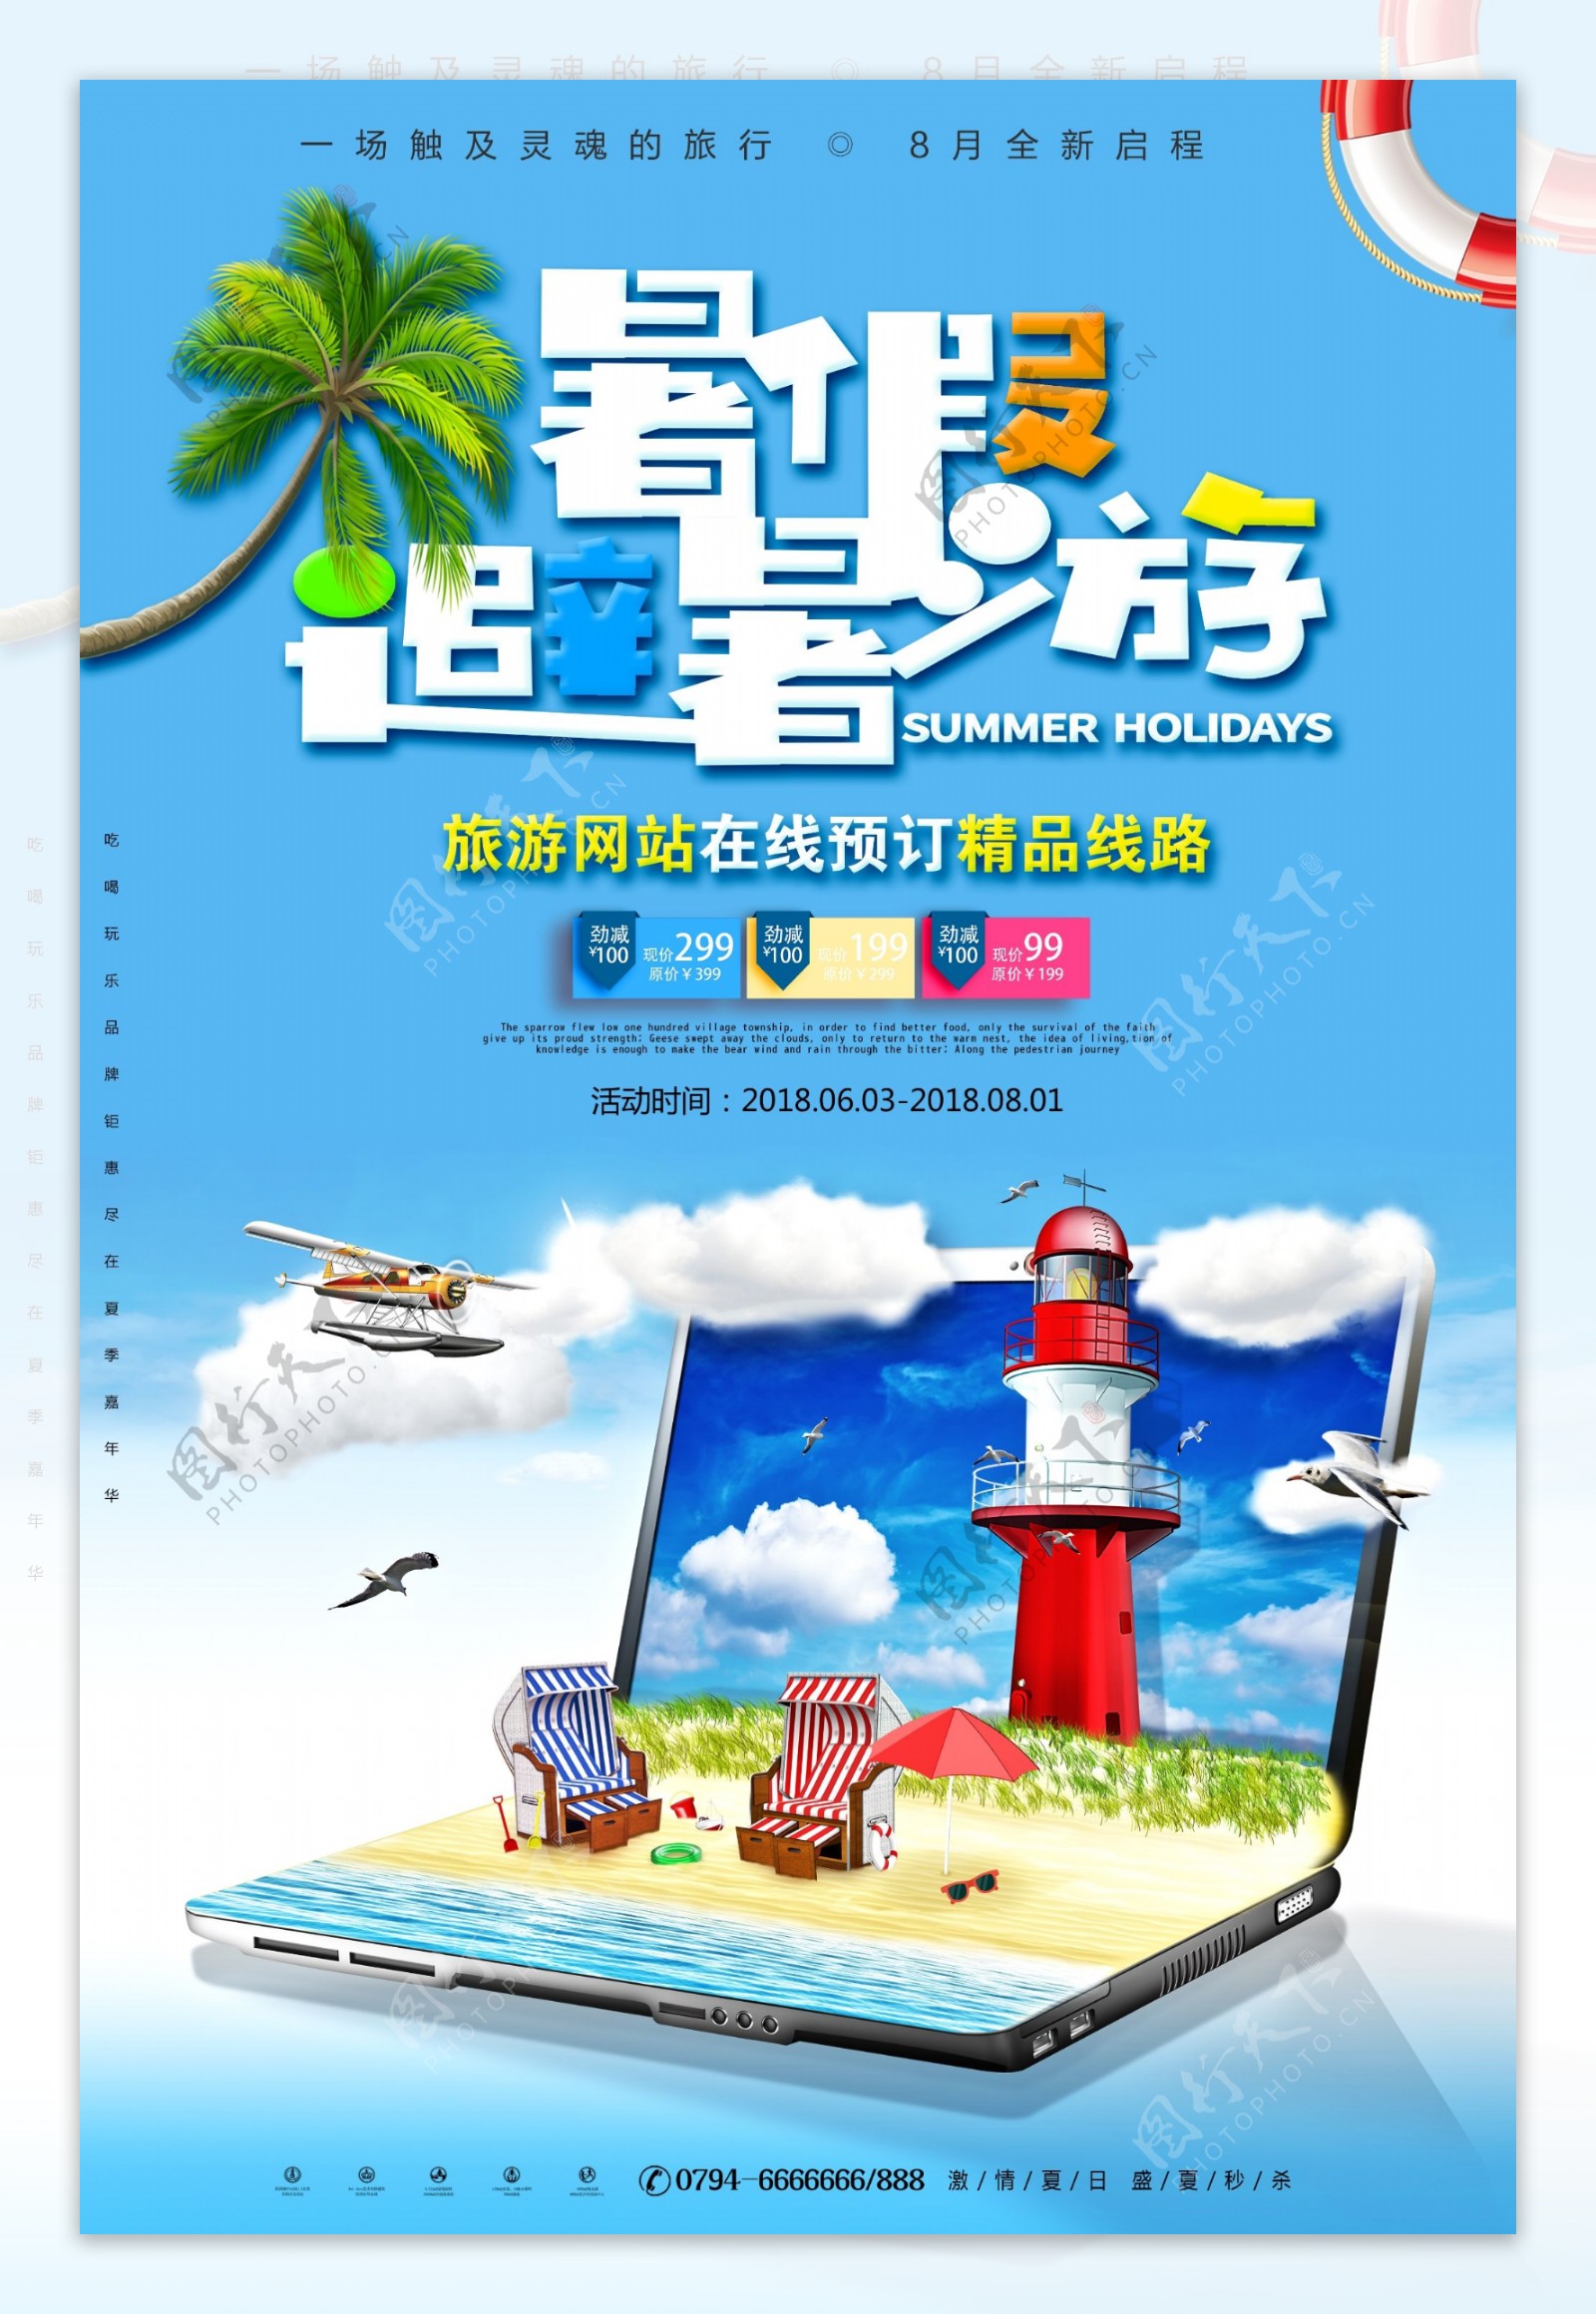 暑假去旅行旅游网站促销海报